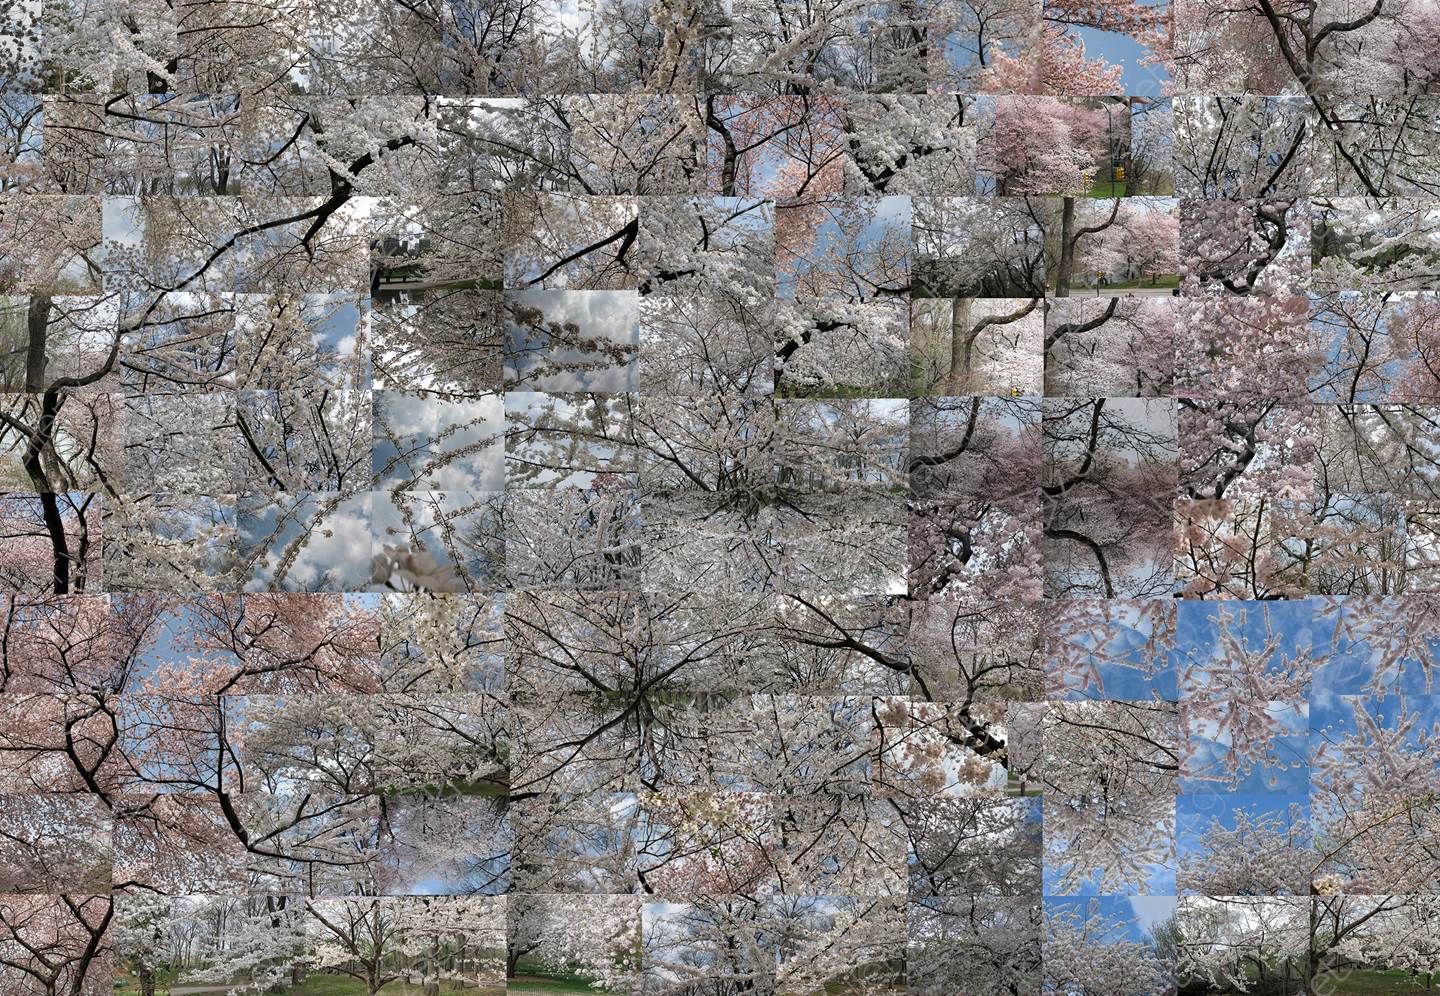 Spring - A stroll In the Park, original Naturaleza Digital Fotografía de Shimon and Tammar Rothstein 